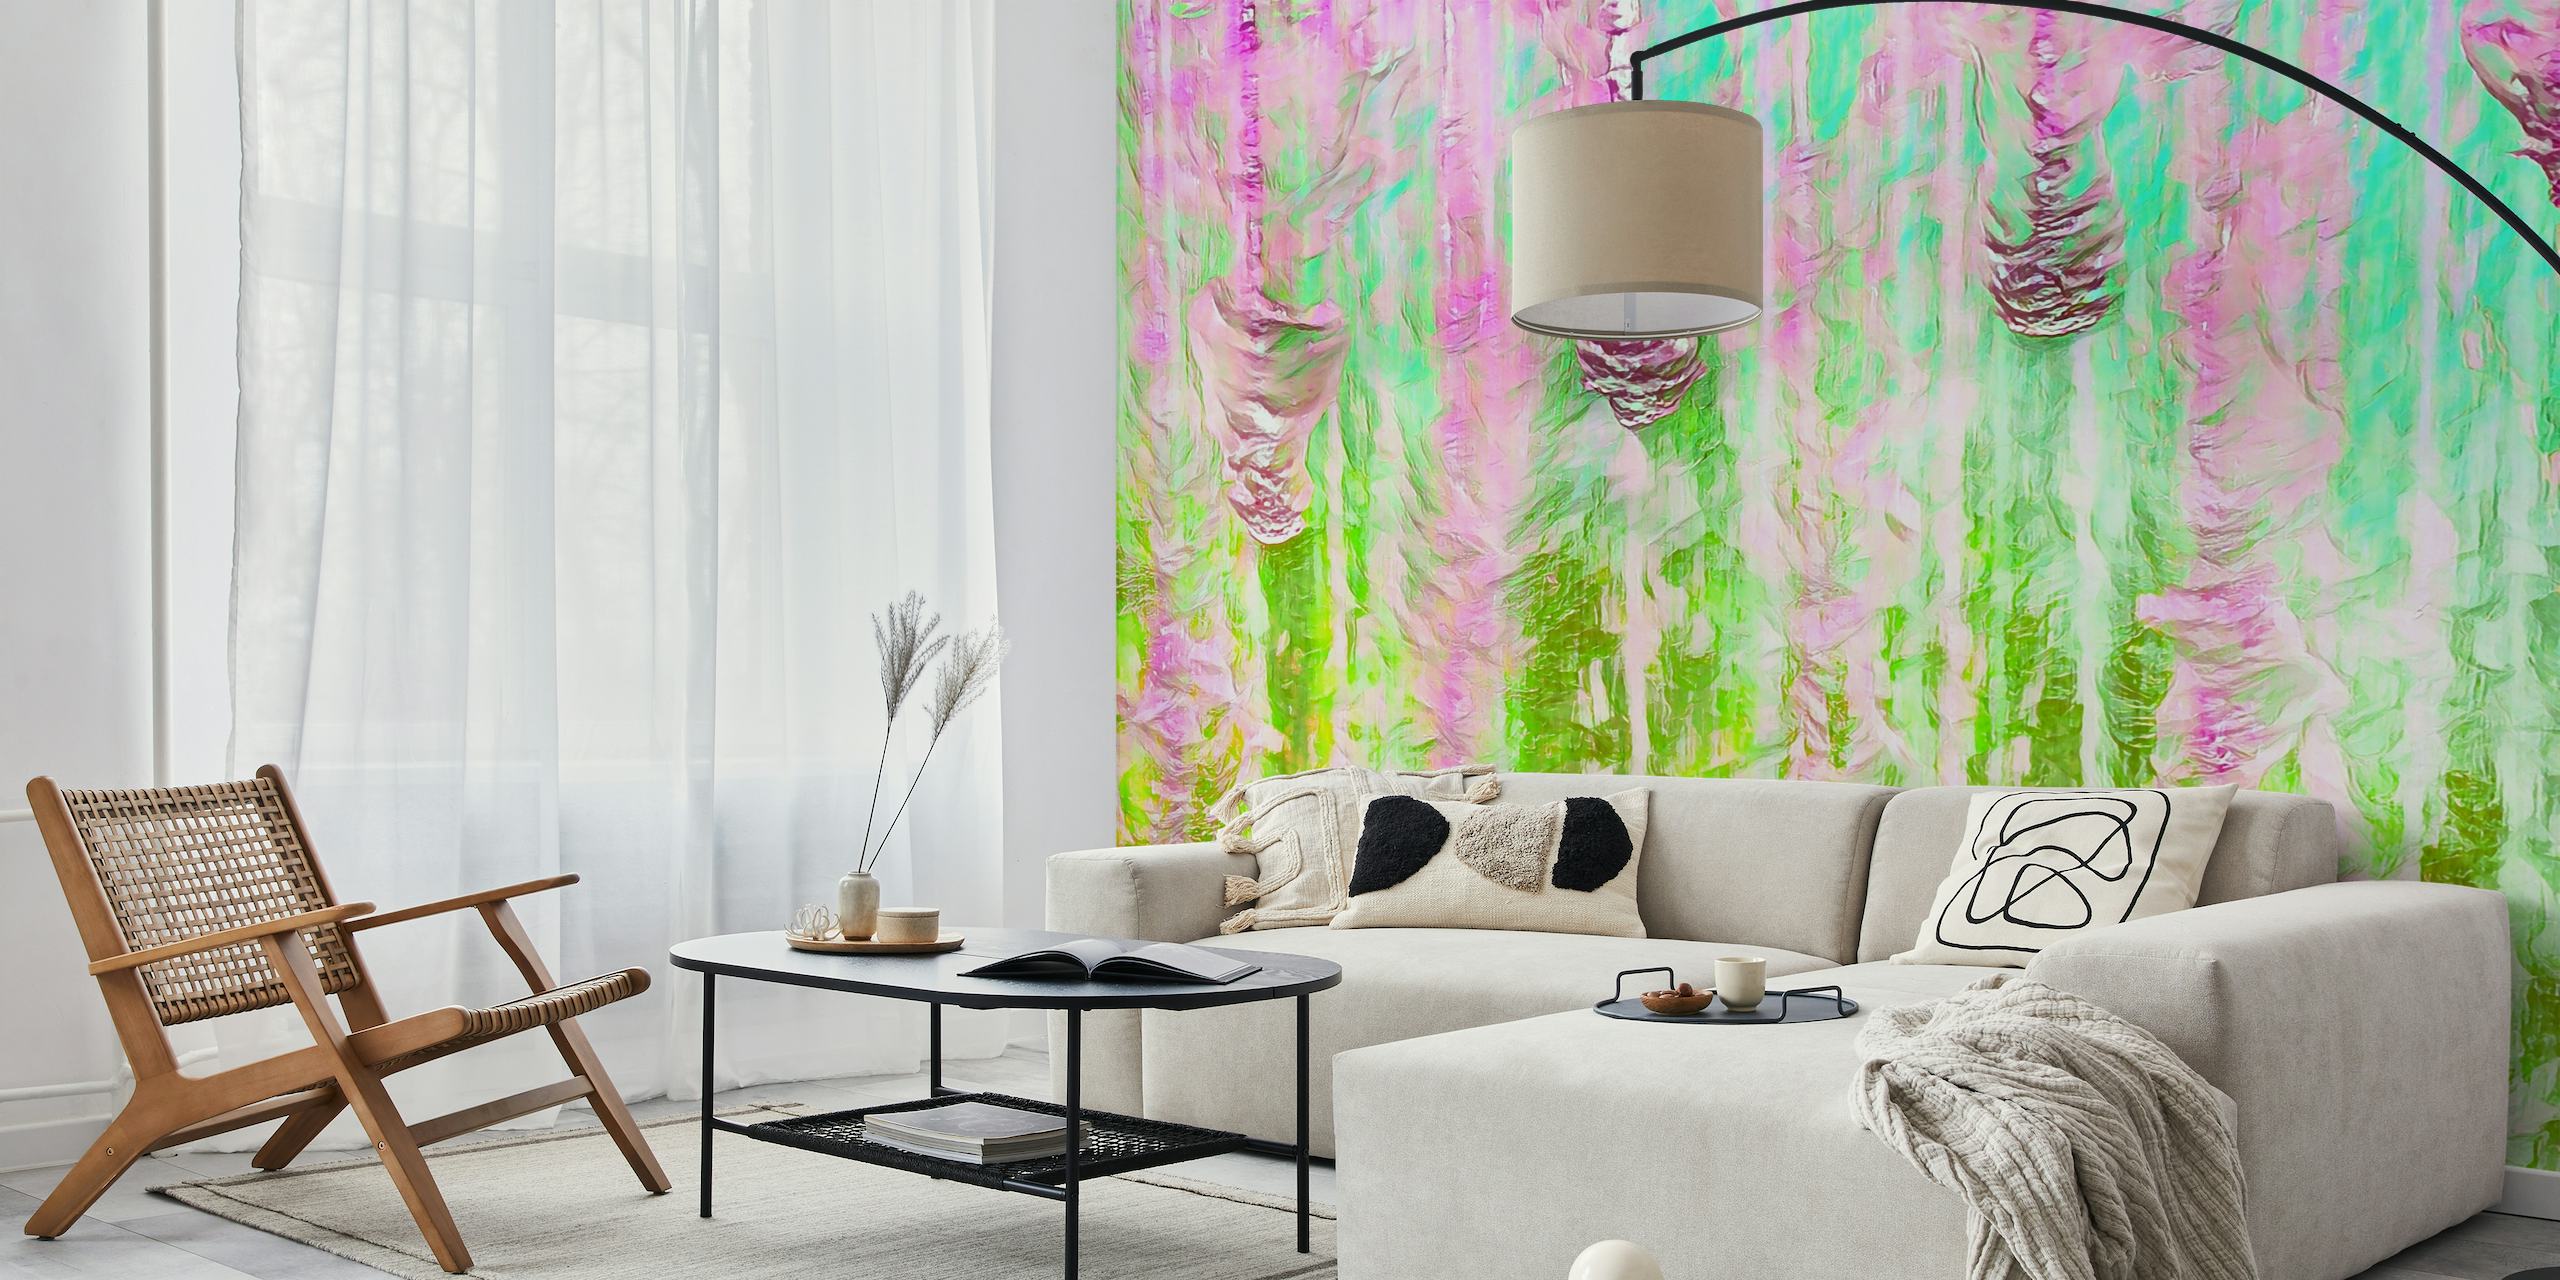 Bunte abstrakte Happy Liquid Paint Flow-Wandmalerei mit leuchtenden Rosa- und Grüntönen, die einen fließenden Aquarelleffekt erzeugen.